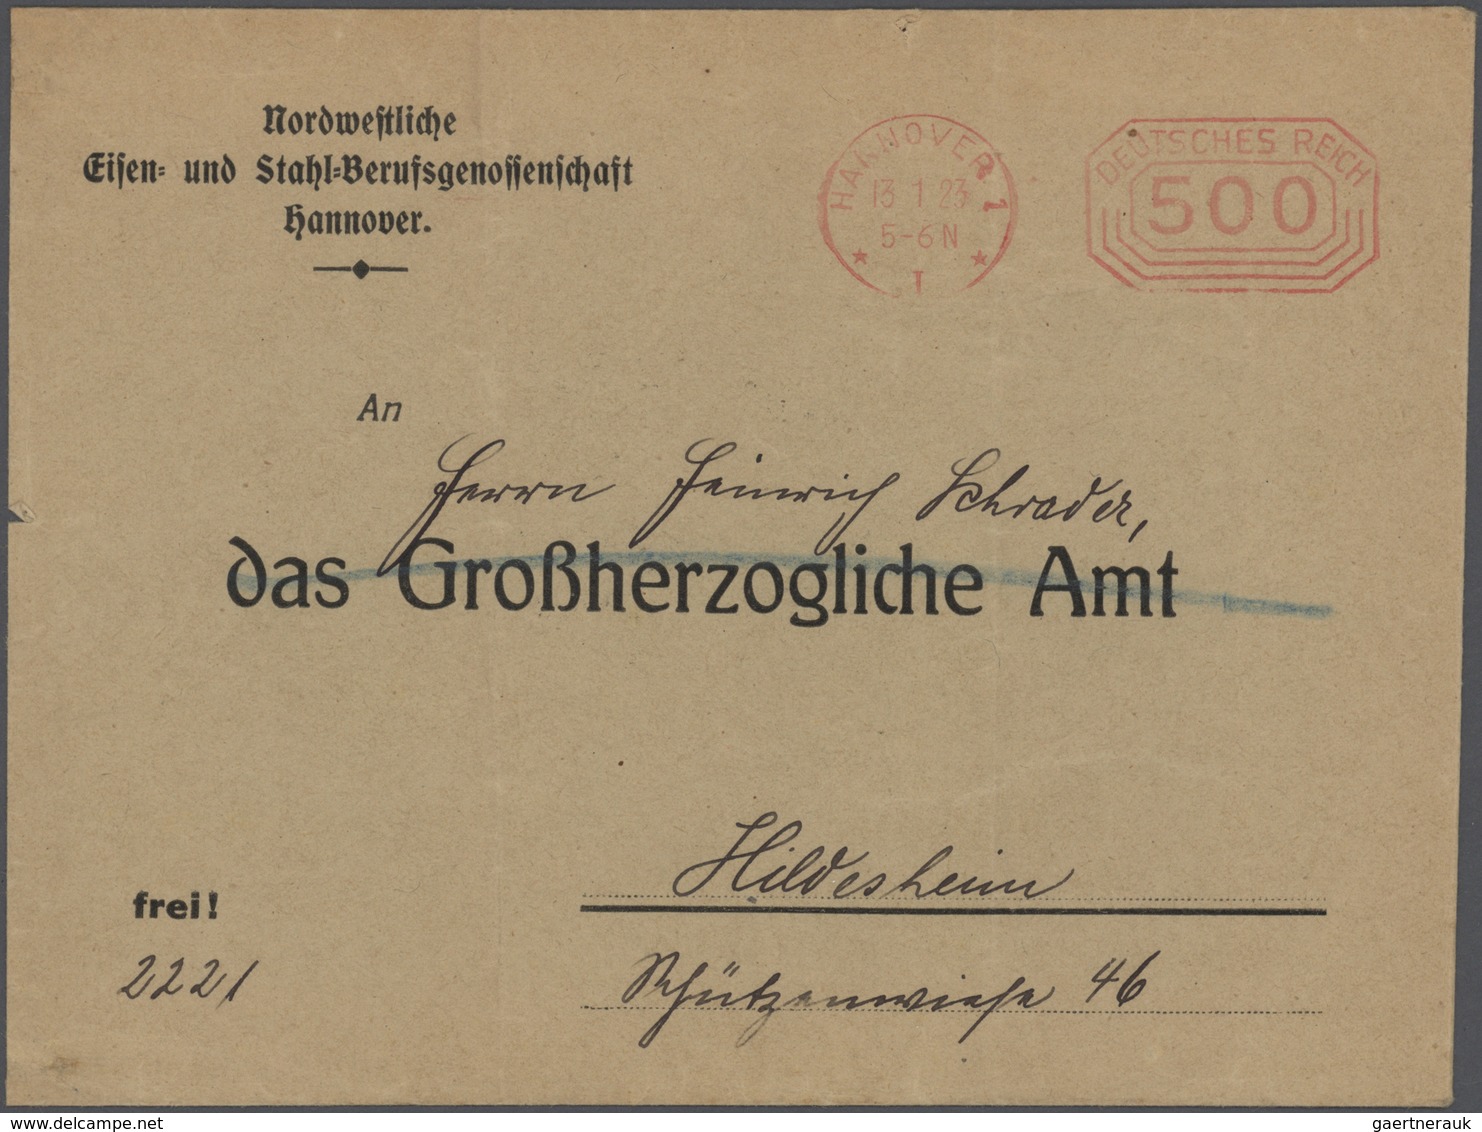 Deutsches Reich: 1872/1945, gut ausgebaute gestempelte Sammlung in 2 hochwertigen Bindern, beginnend